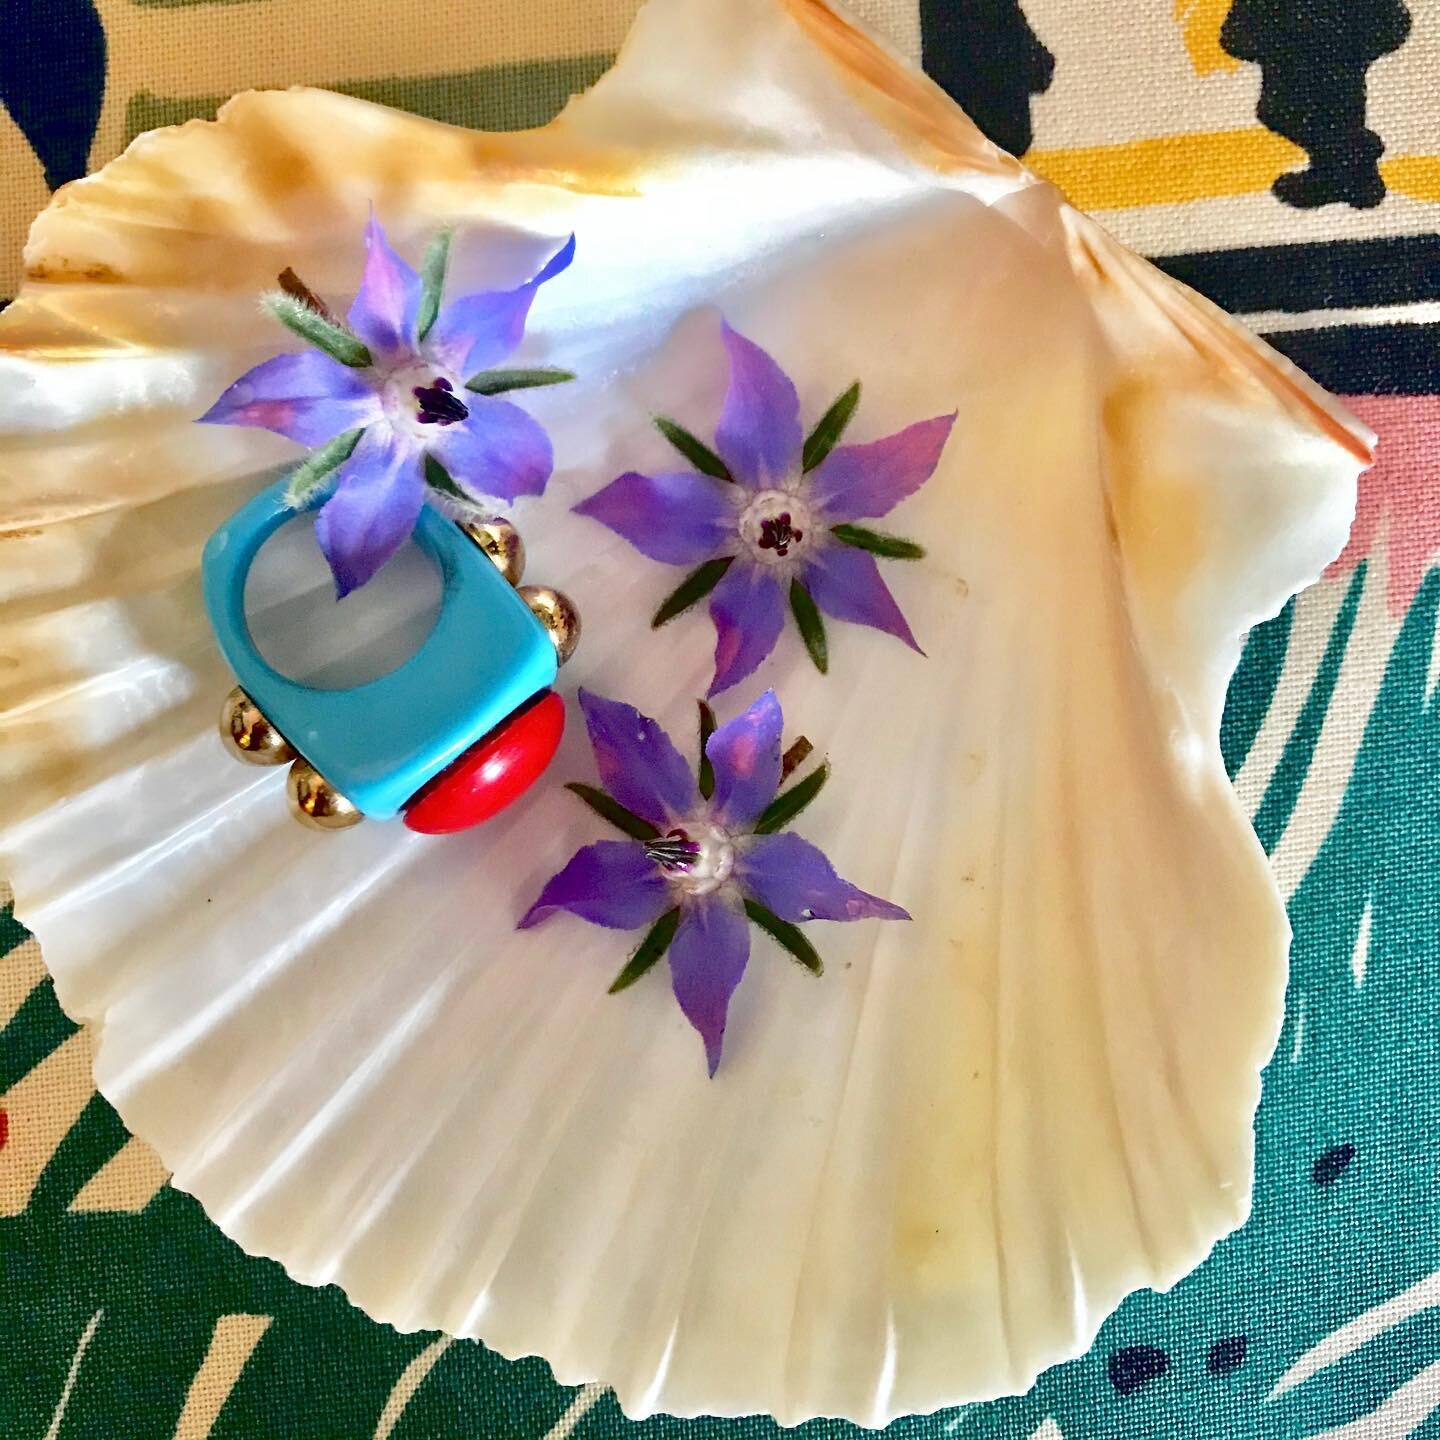 Treasures 💜

___________________________________________

#jewelry #jewellery #meadowflowers #garden #gardenflowers #lamanso #ring #plastic #colliercampbell #colliercampbellarchive #colliercampbellfabric #fabric #softfurnishings #shell #seashells #s